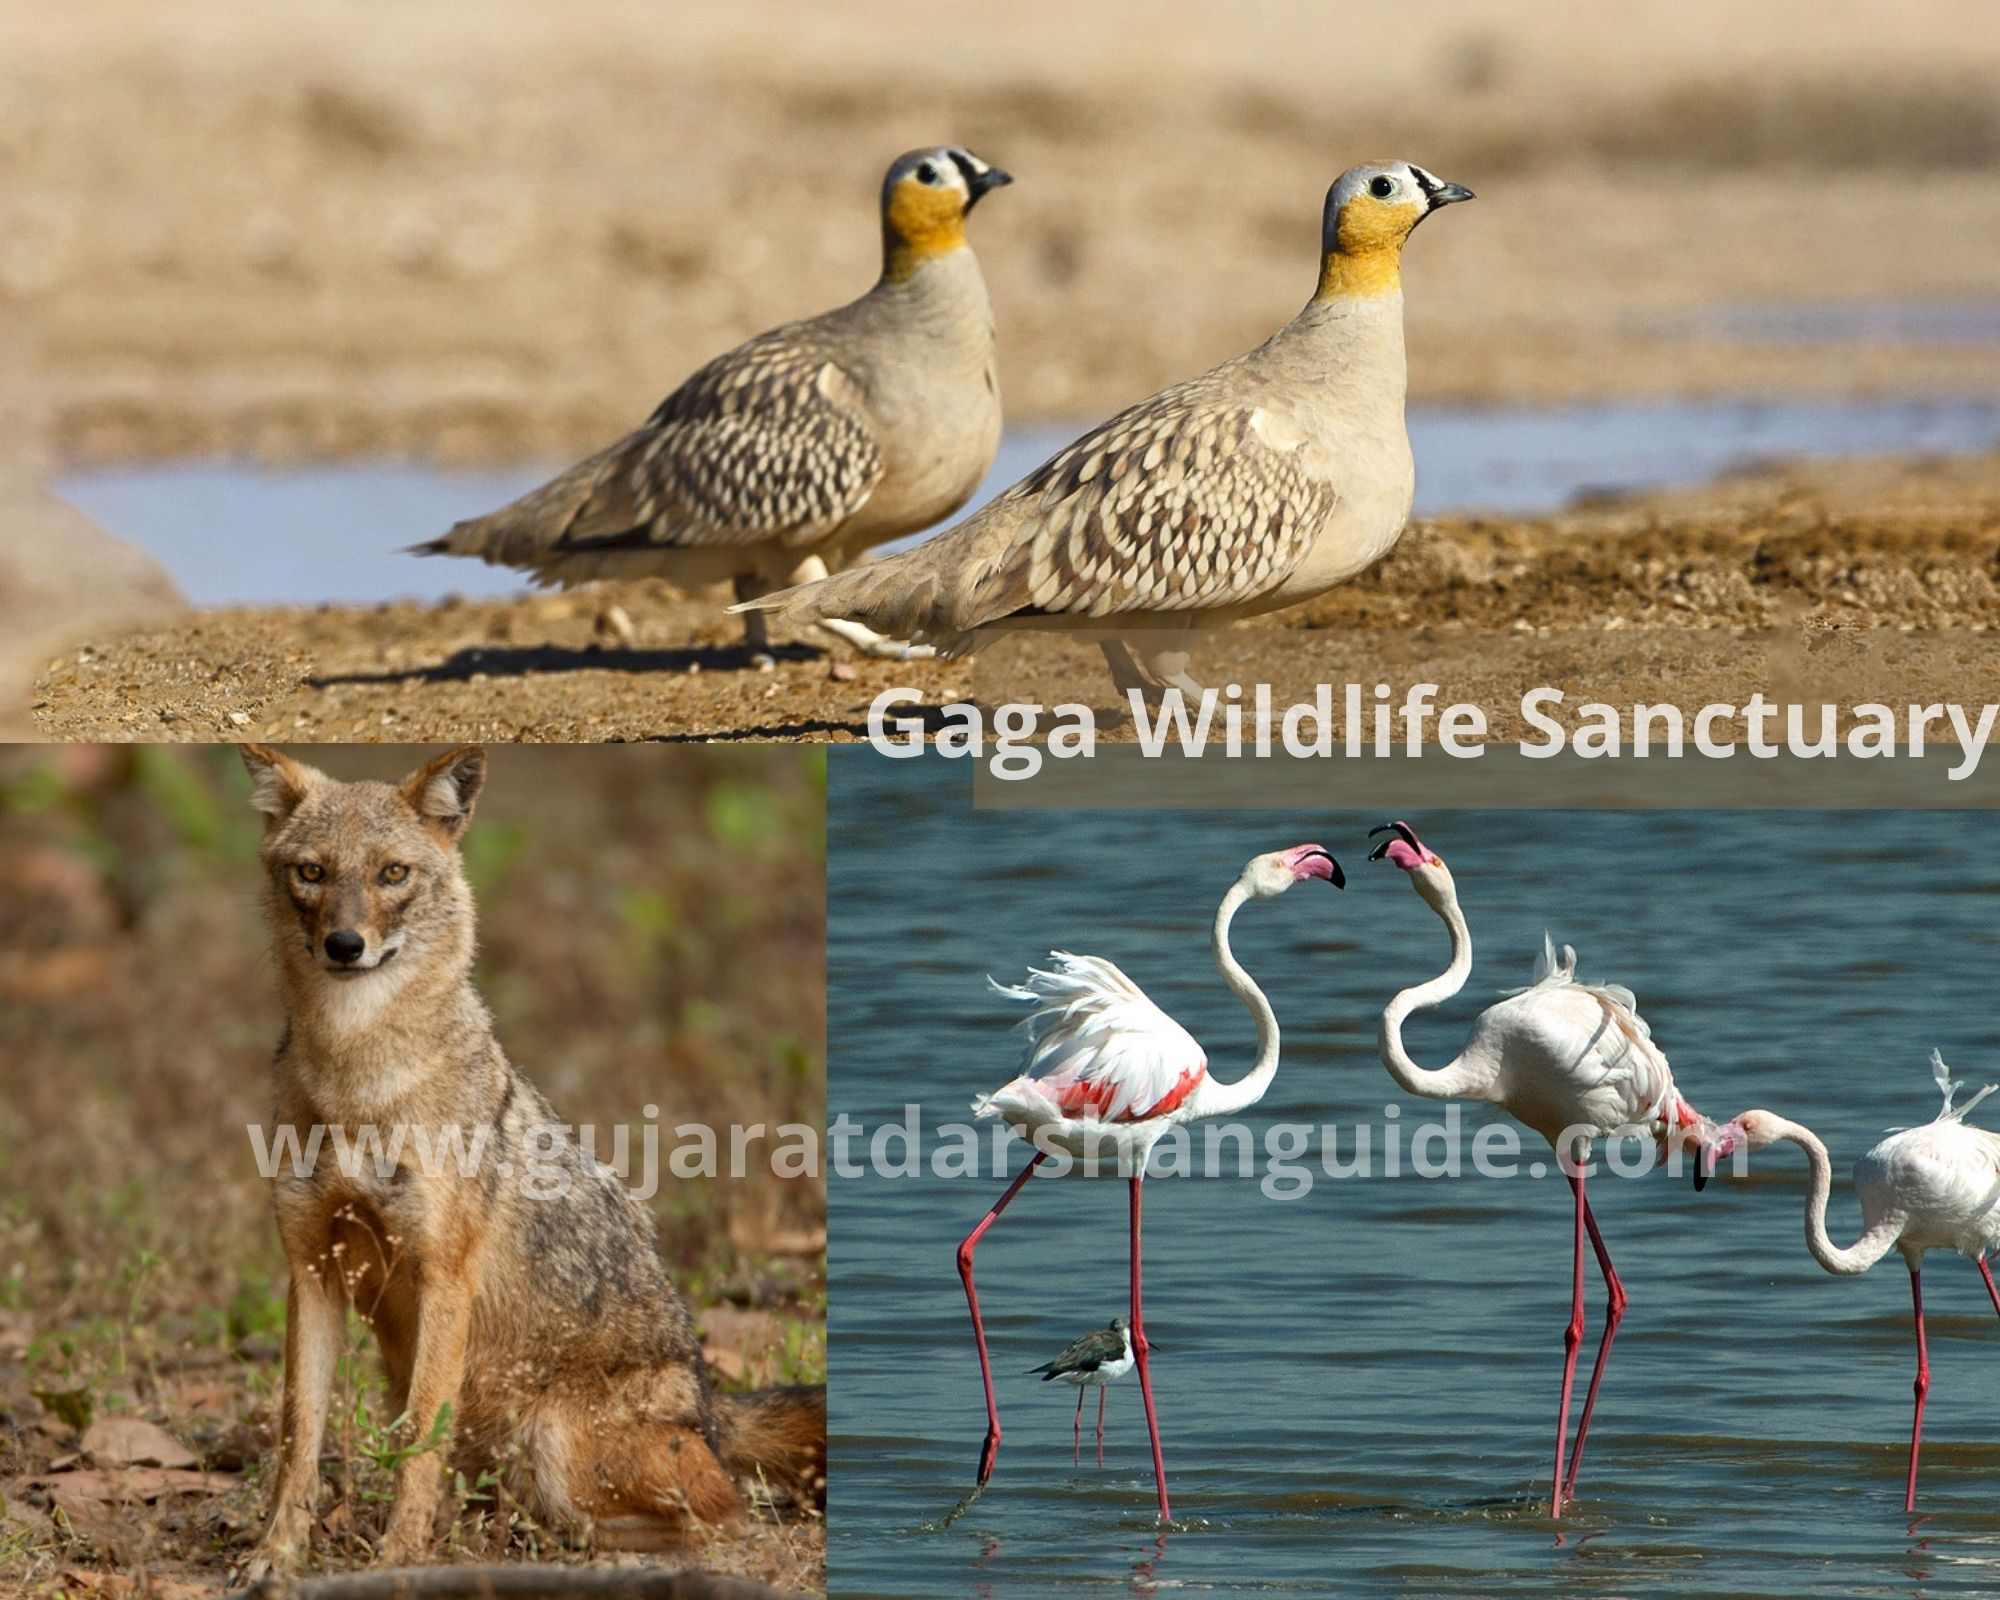 Gaga Wildlife Sanctuary